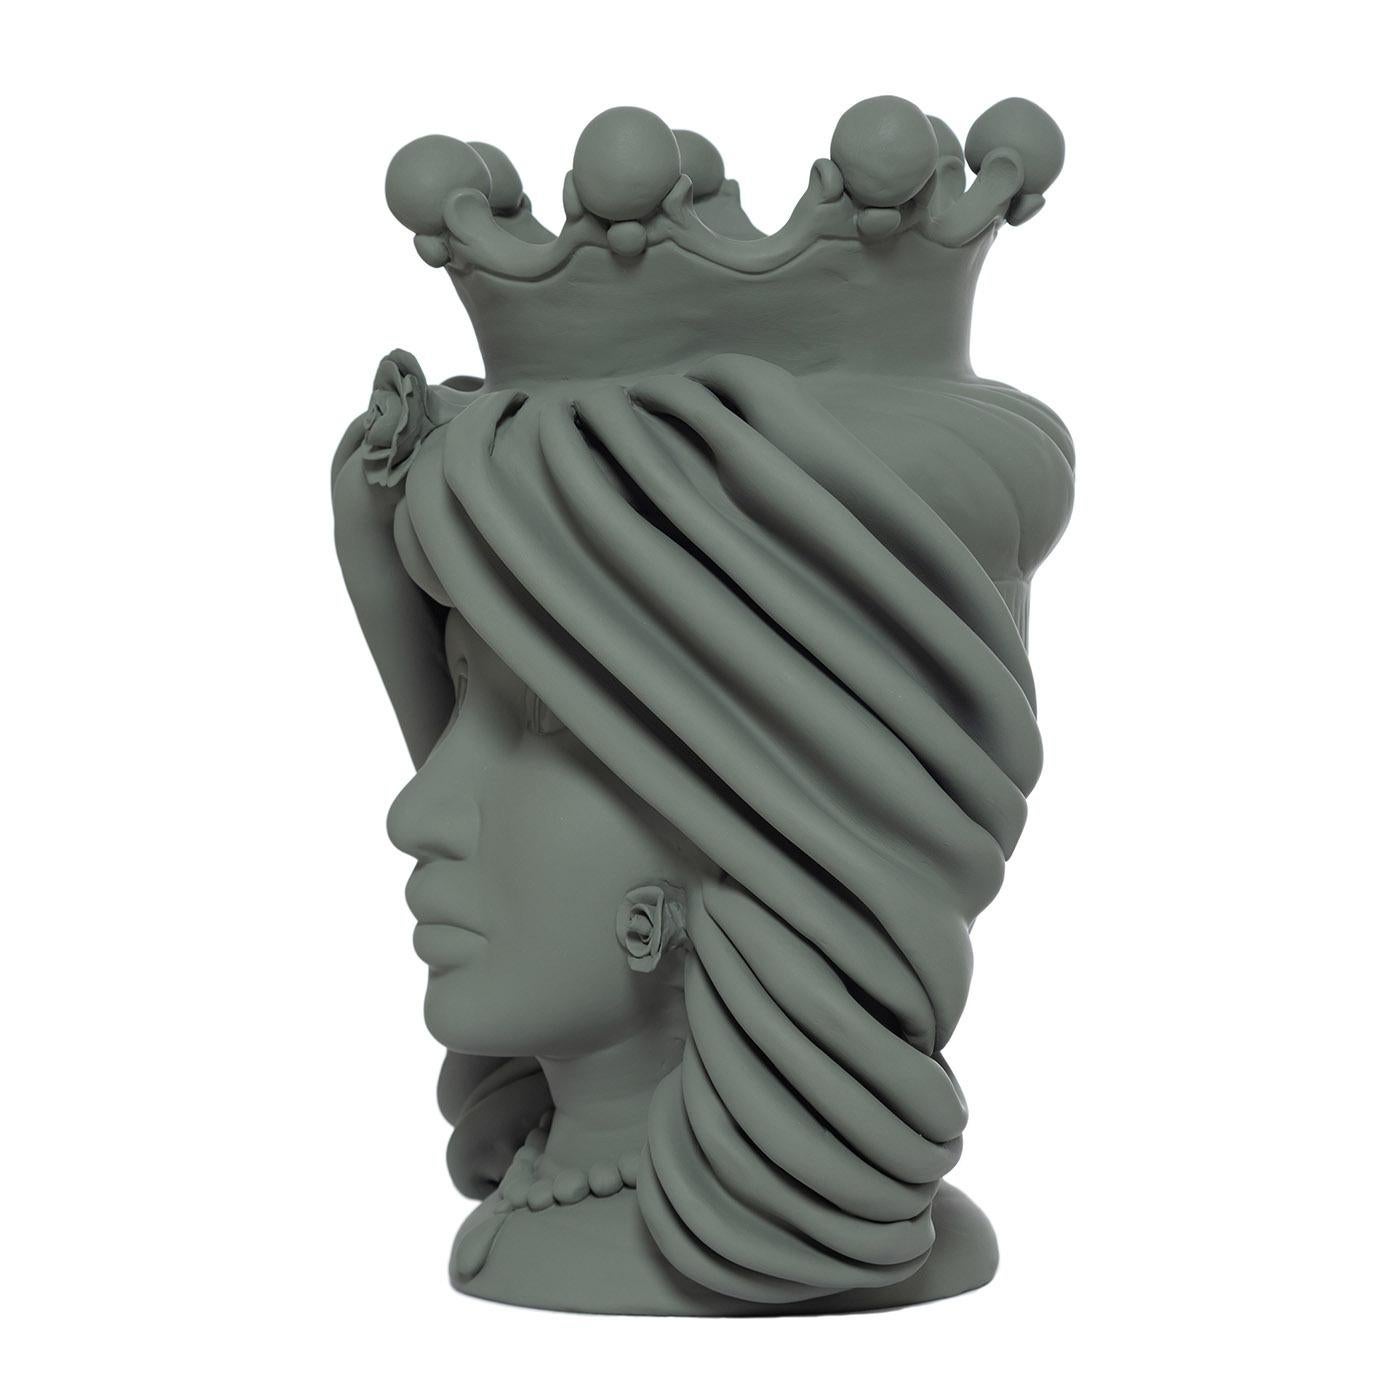 Ce vase fabriqué à la main est une interprétation contemporaine de la femme sicilienne Moore, une production artistique emblématique de l'île. Entièrement réalisé à la main en argile, ce vase anthropomorphe présente une finition monochromatique mate